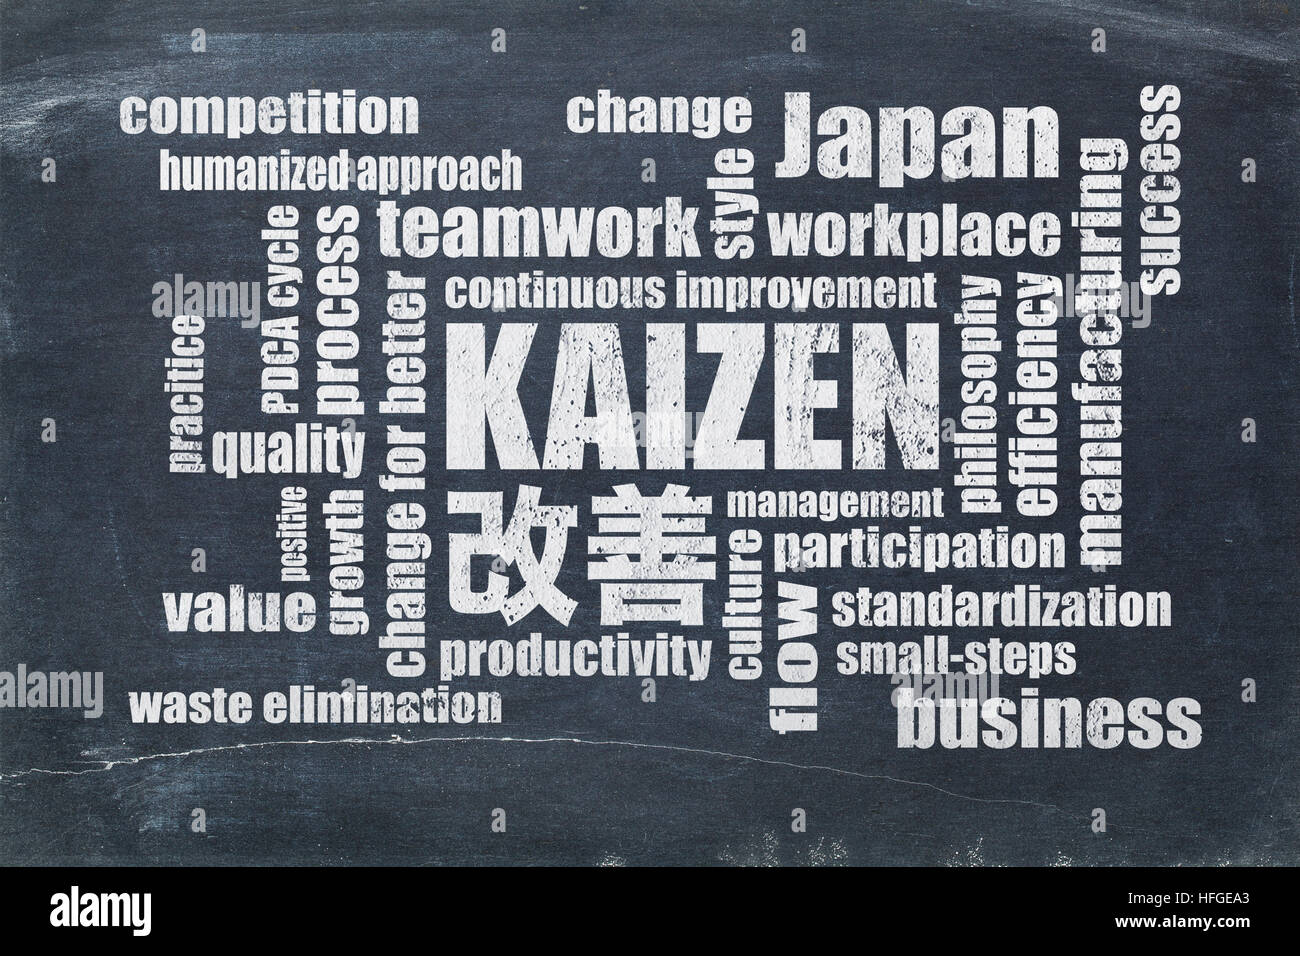 Kaizen - japanische kontinuierliche Verbesserung Konzept - Wortwolke auf einer Schiefertafel Tafel Stockfoto